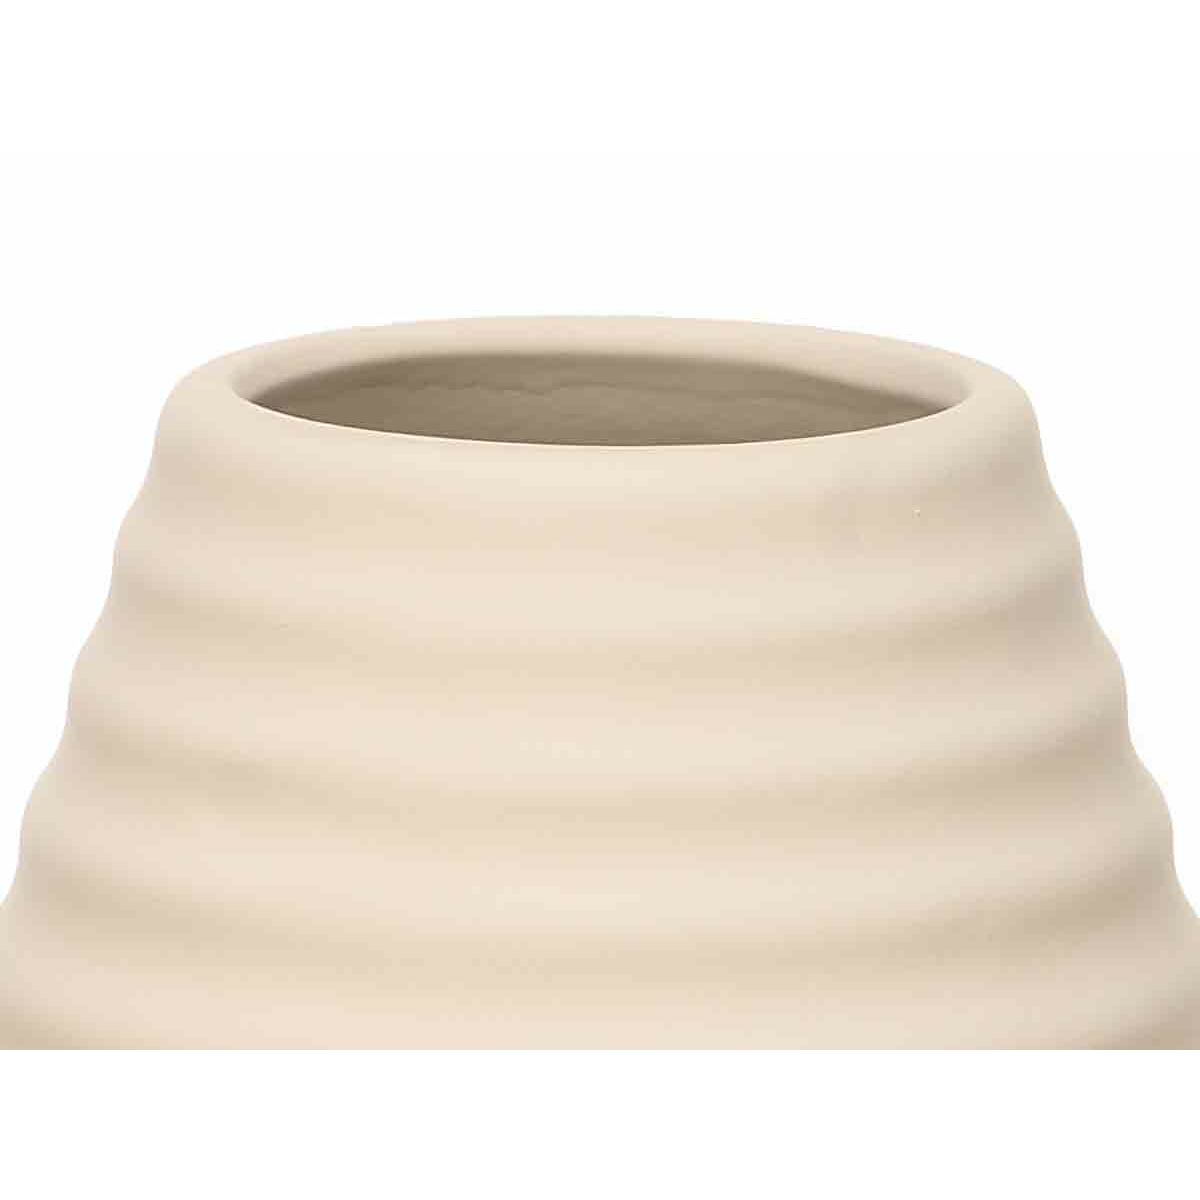 Vase Beige aus Keramik 19 x 33 x 19 cm (4 Stück) Streifen